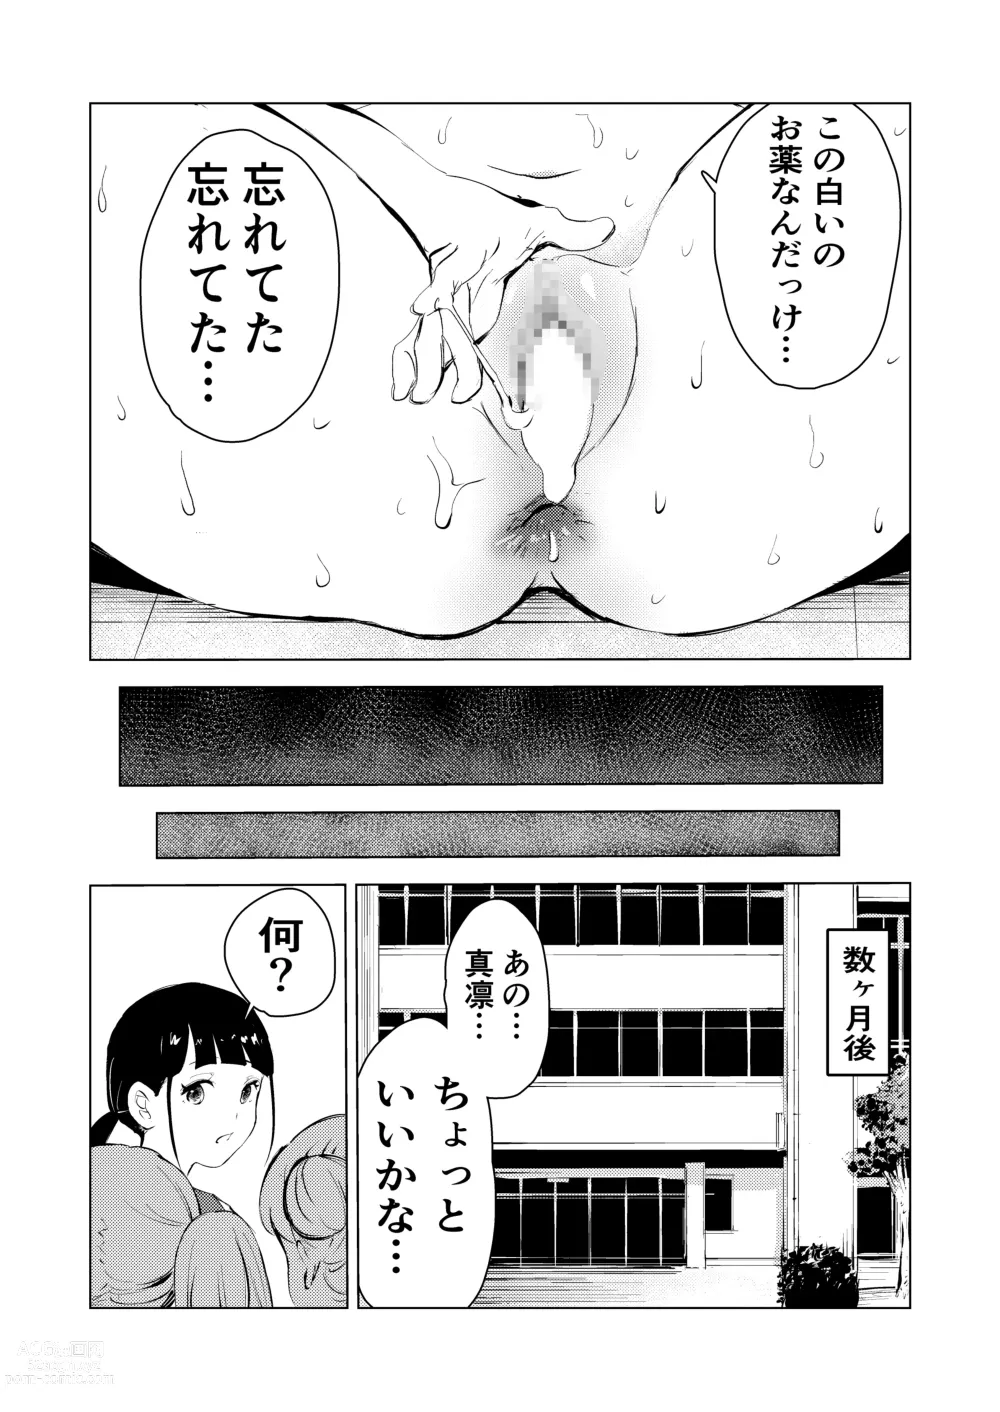 Page 85 of doujinshi 40-sai no Mahoutsukai 3